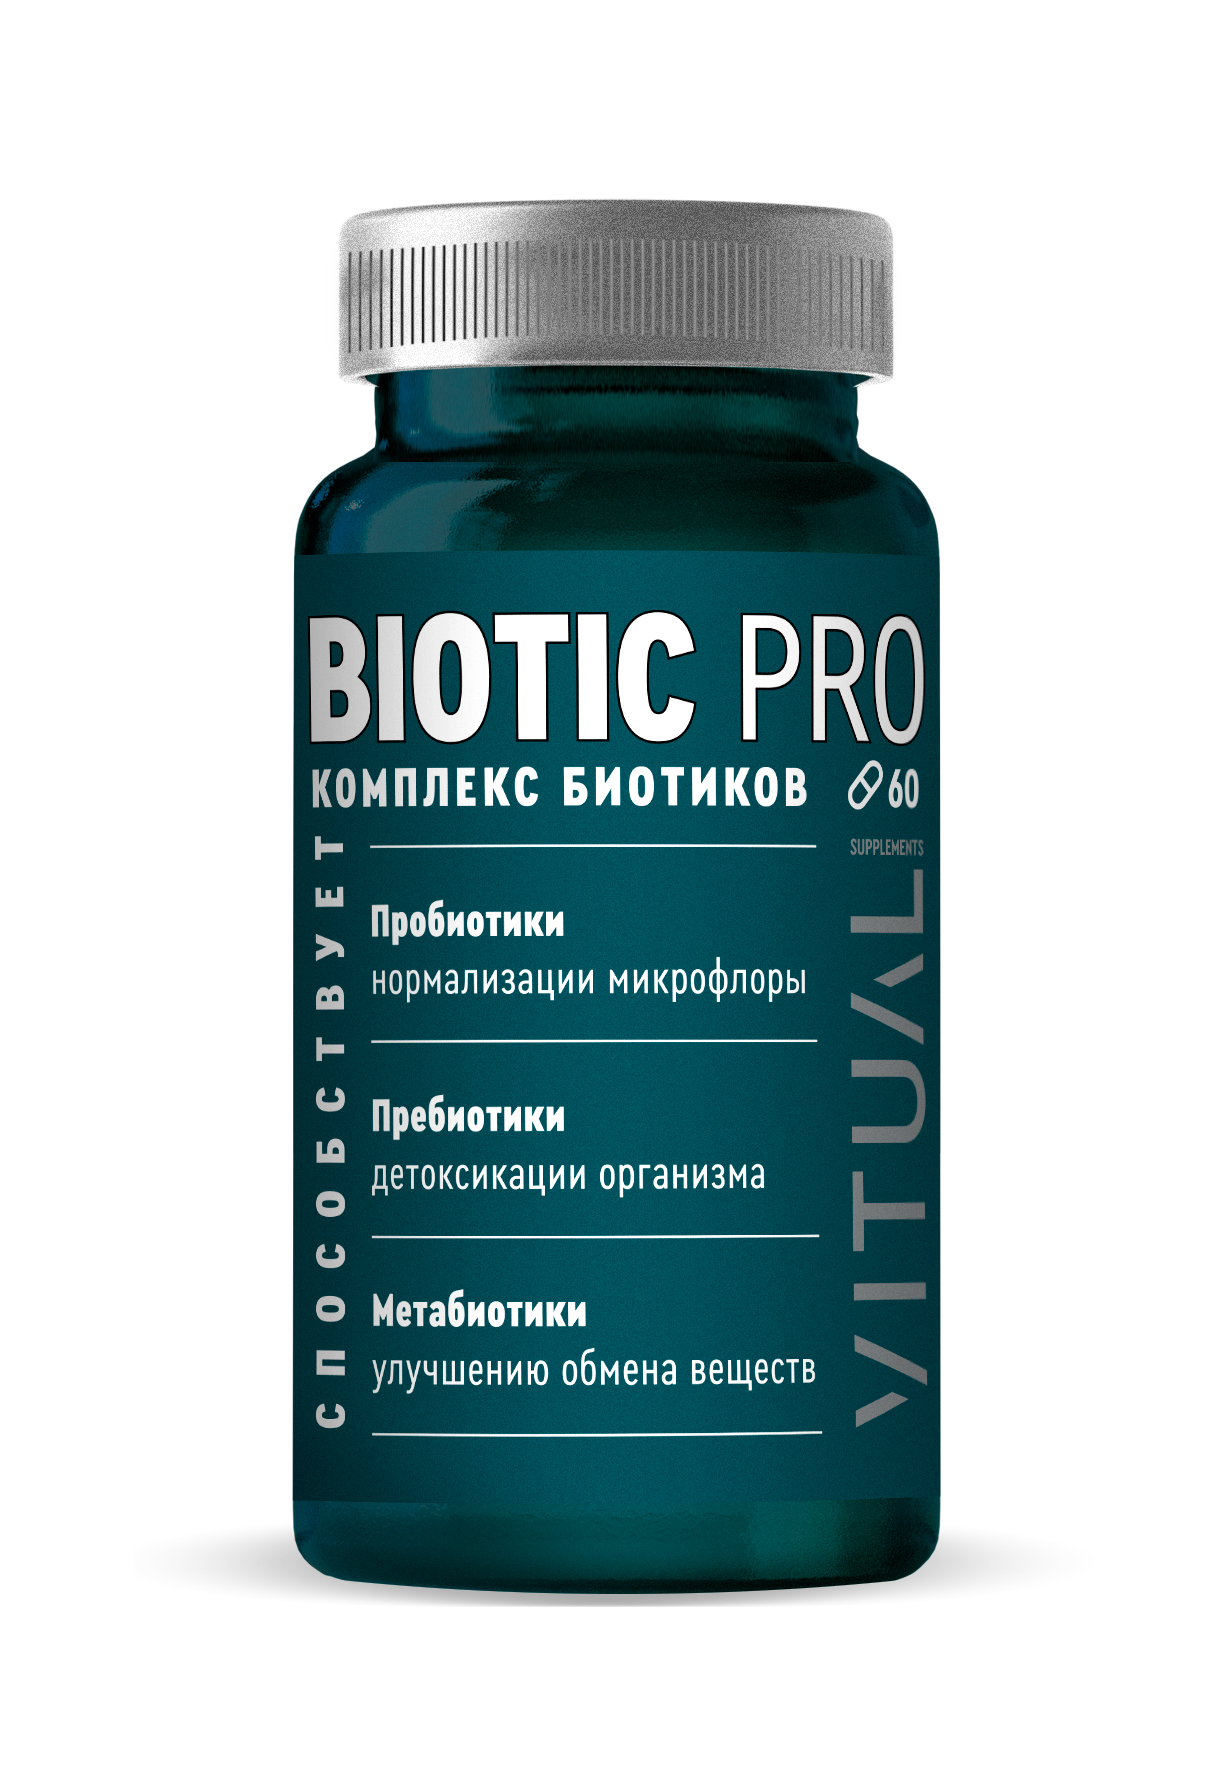 Biotic Pro